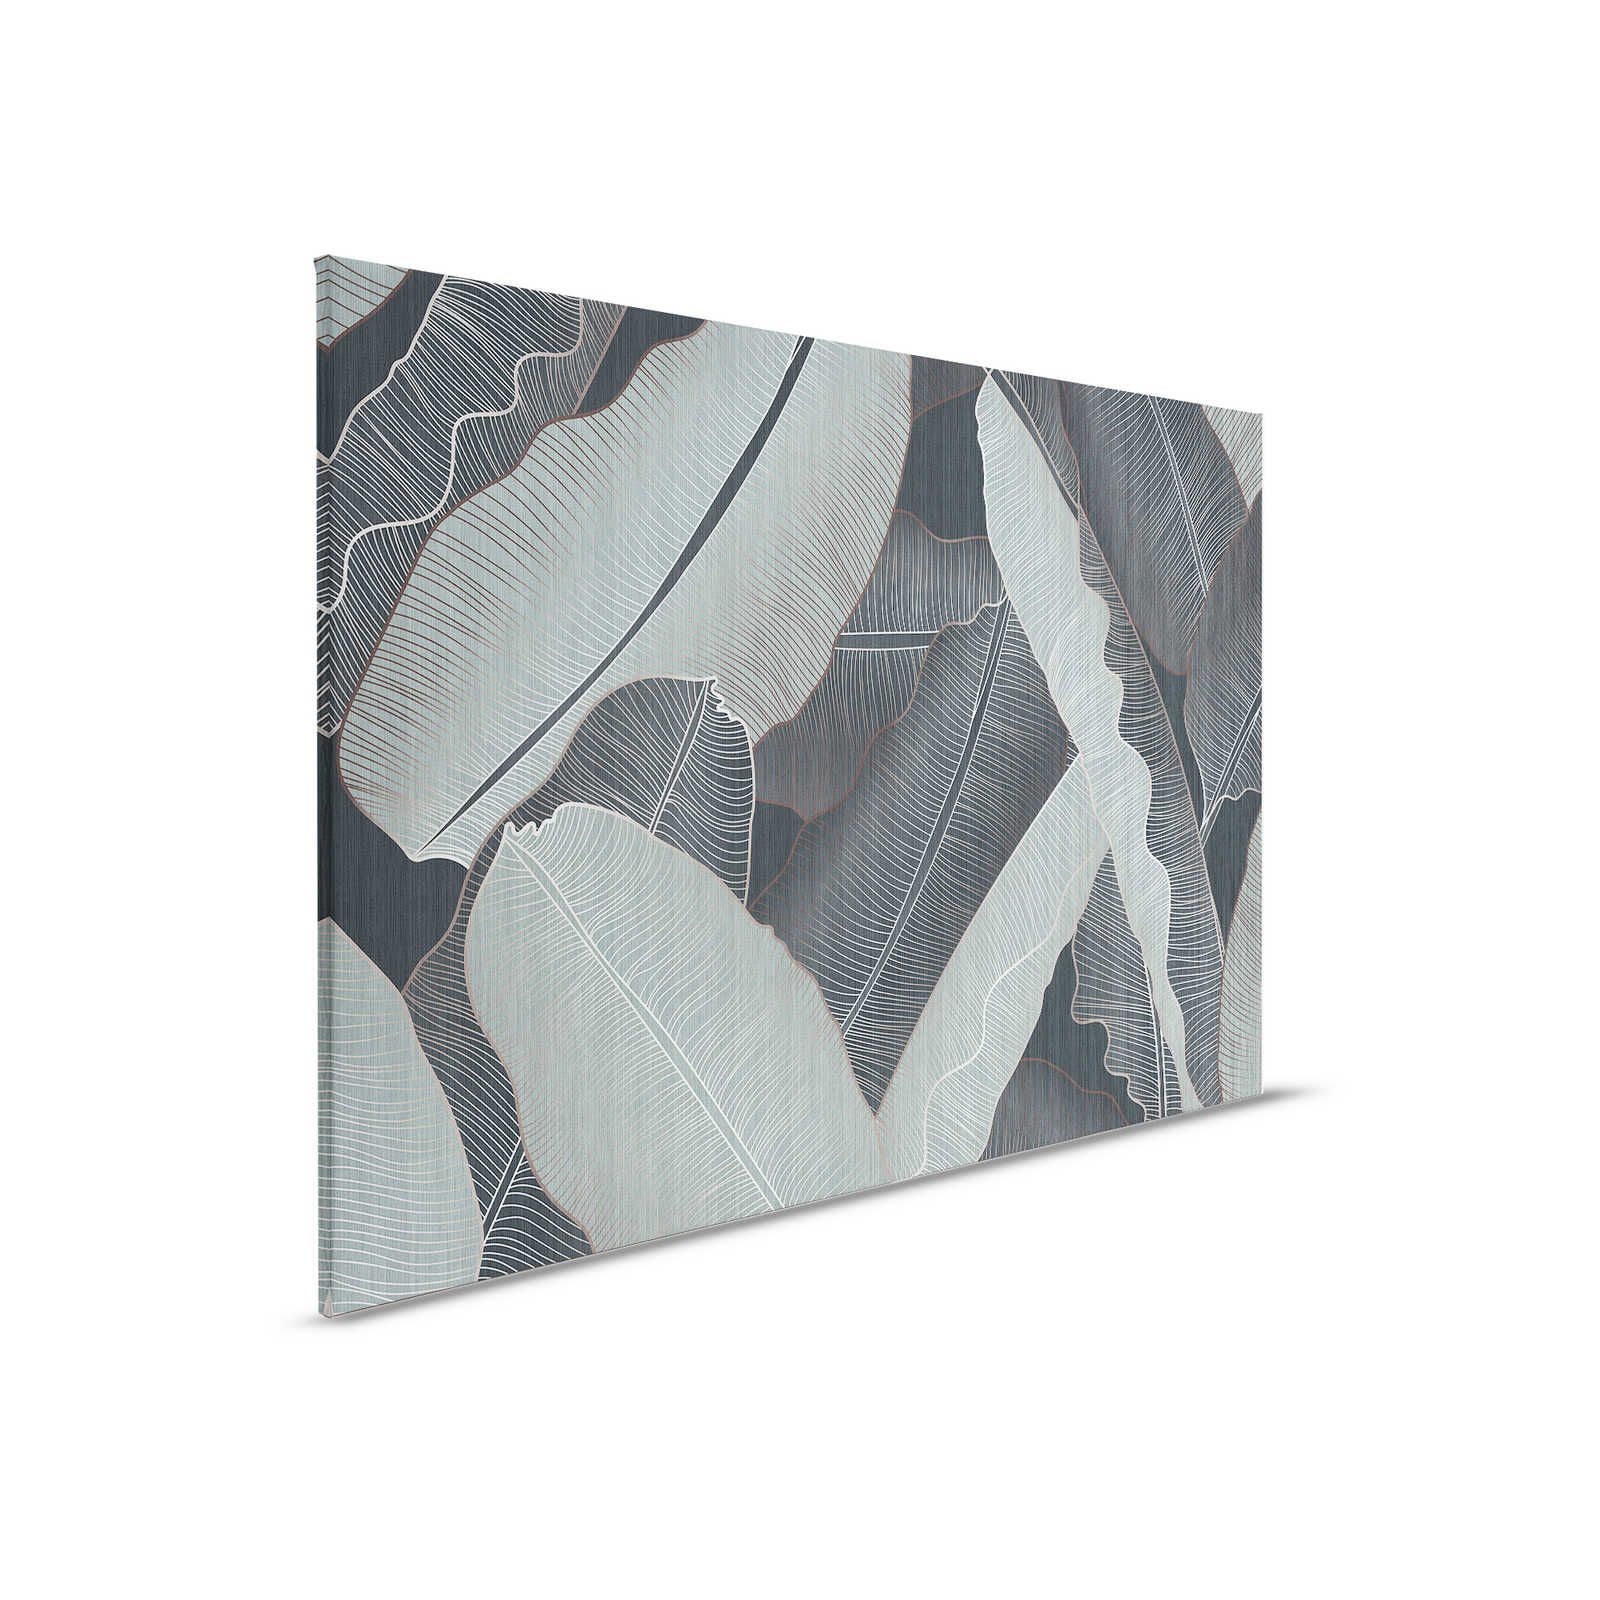 Sotto la copertura 1 - Pittura su tela con foglie di palma in stile disegno grigio e verde pallido - 0,90 m x 0,60 m
